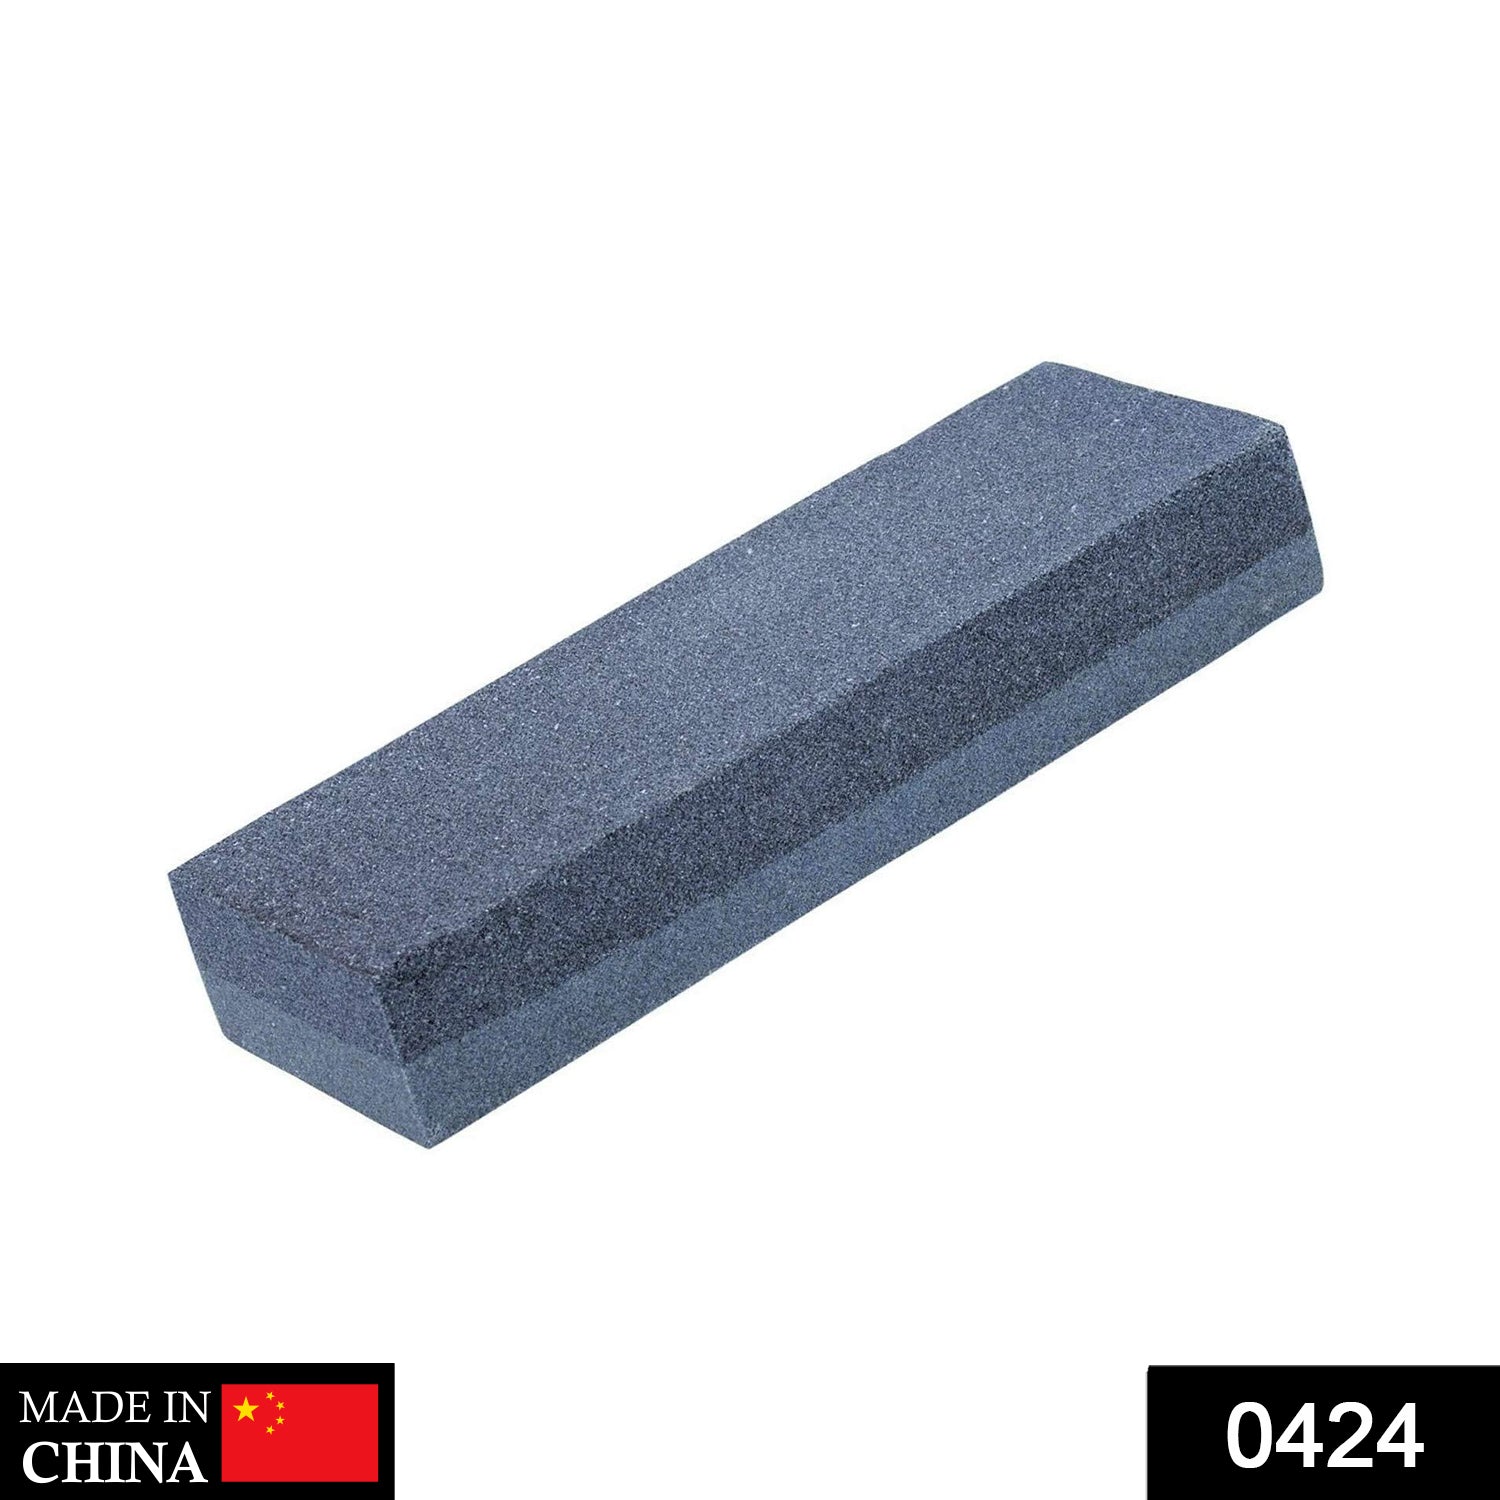 424 Silicone Carbide Combination Stone DeoDap